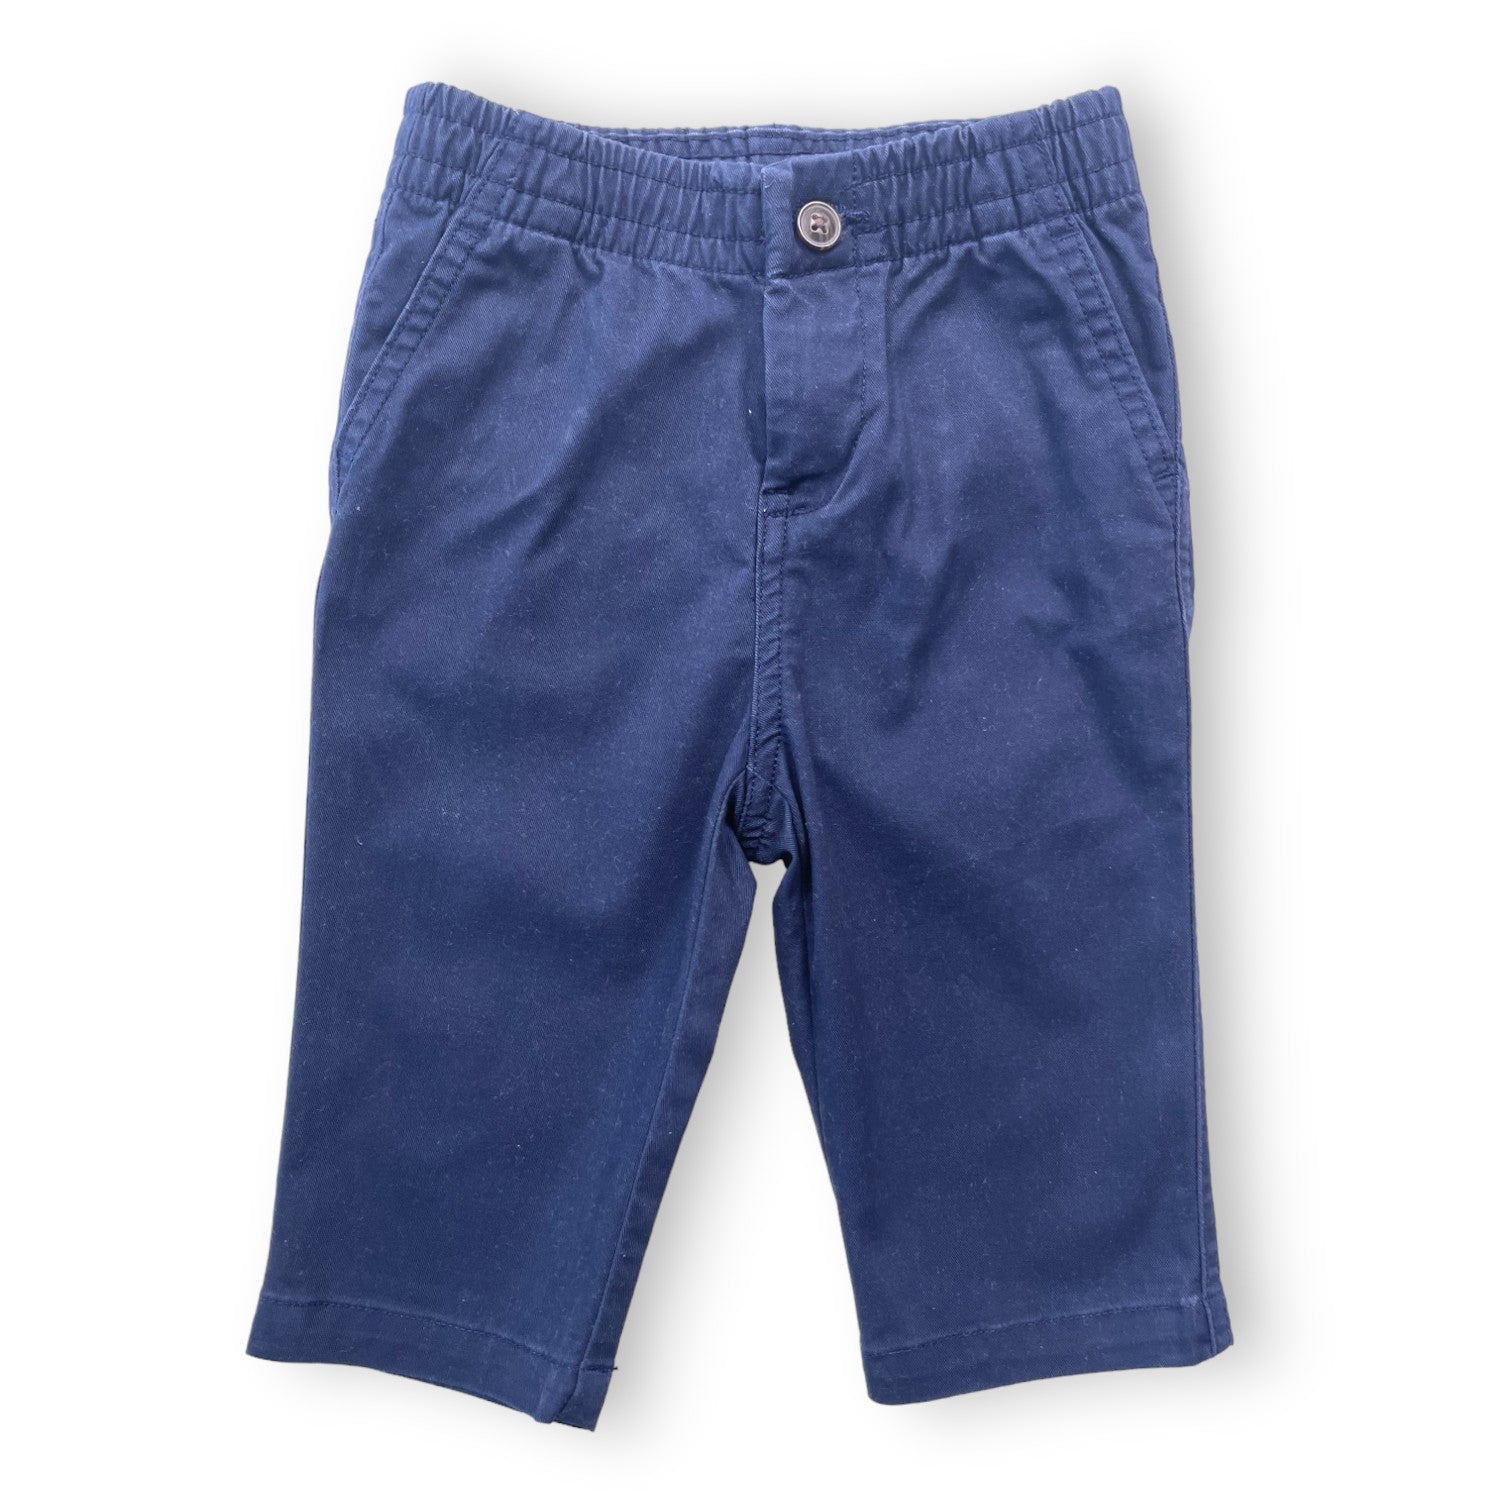 RALPH ALUREN - Pantalon bleu marine droit - 9 mois